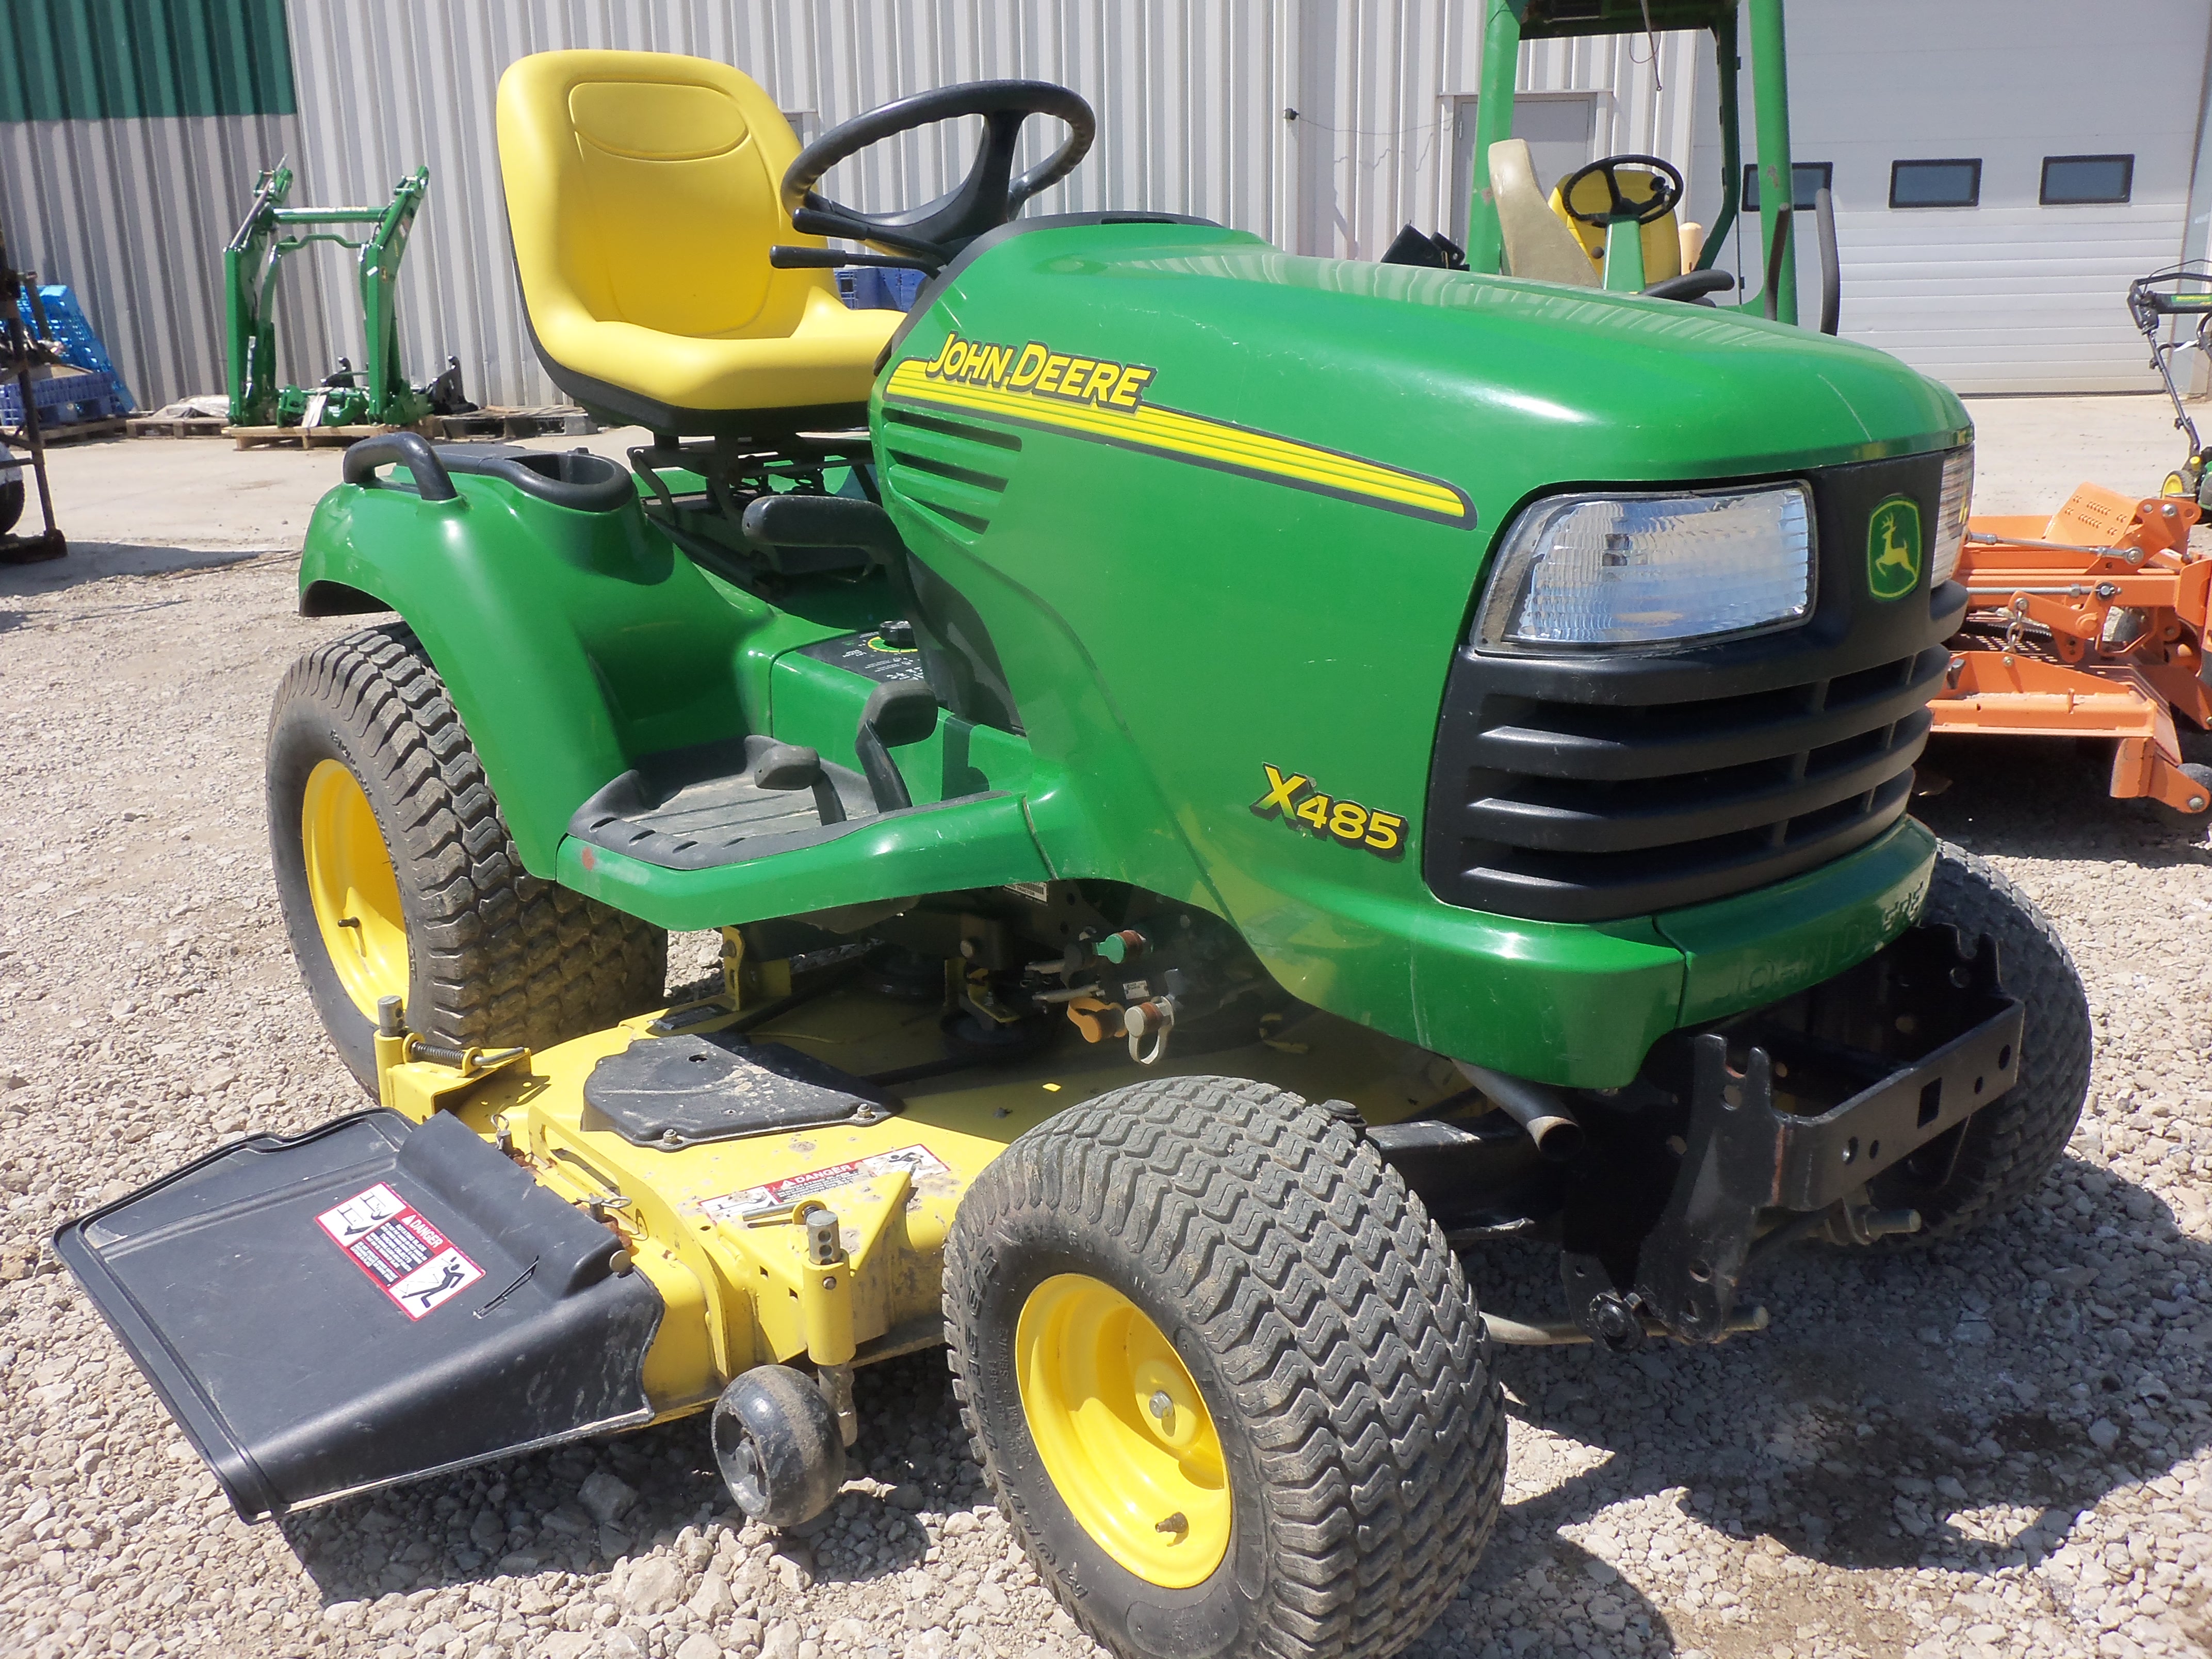 John Deere X485 garden tractor | Tractors | Pinterest